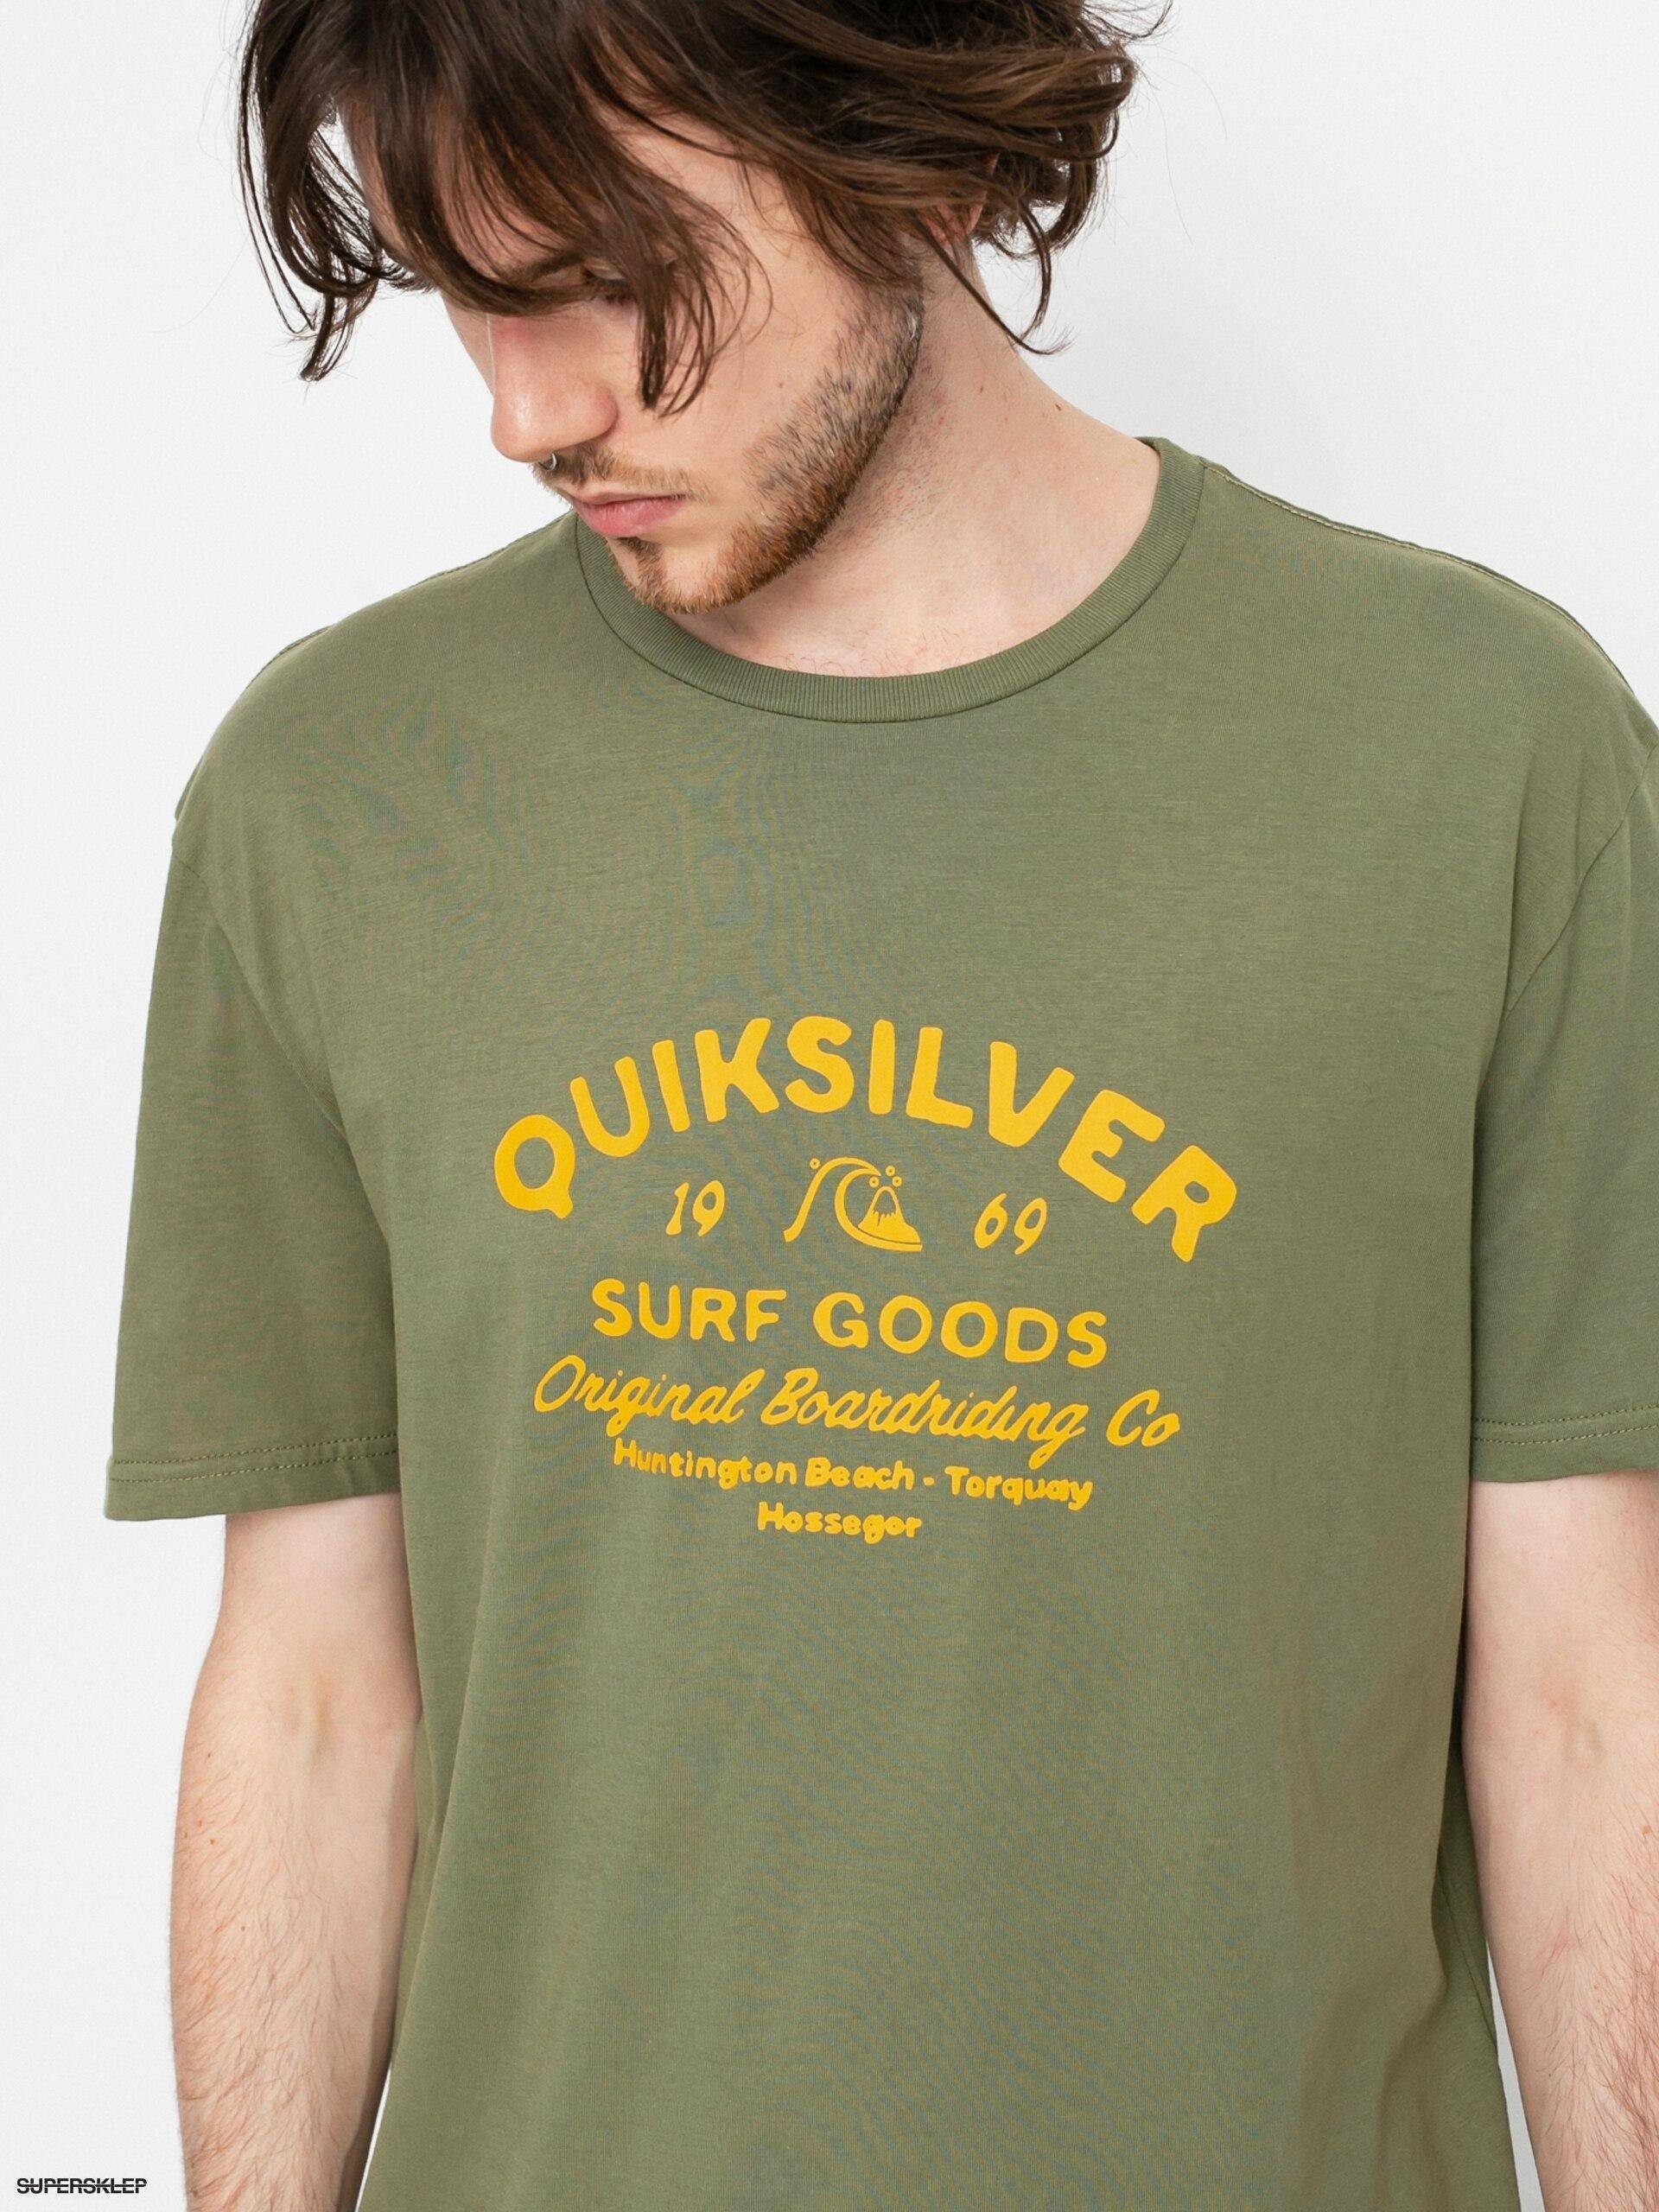 T-Shirt für Quiksilver Print-Shirt CLOSED CAPTIONS - Männer